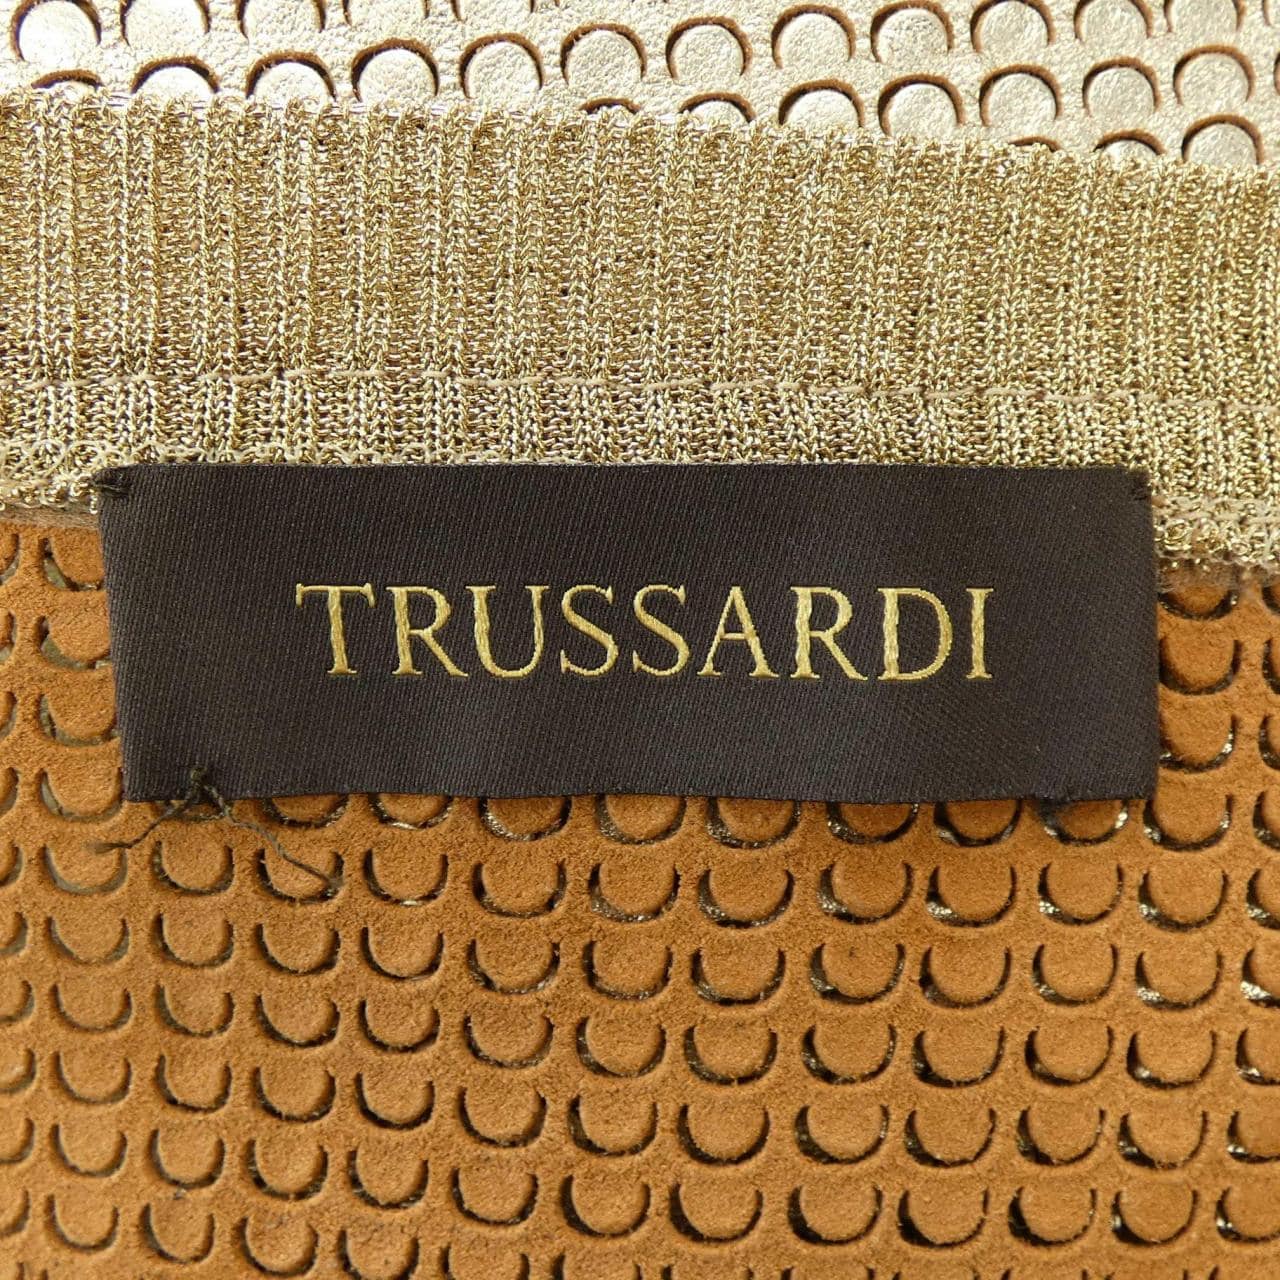 Trasaldi TRUSSARDI上衣